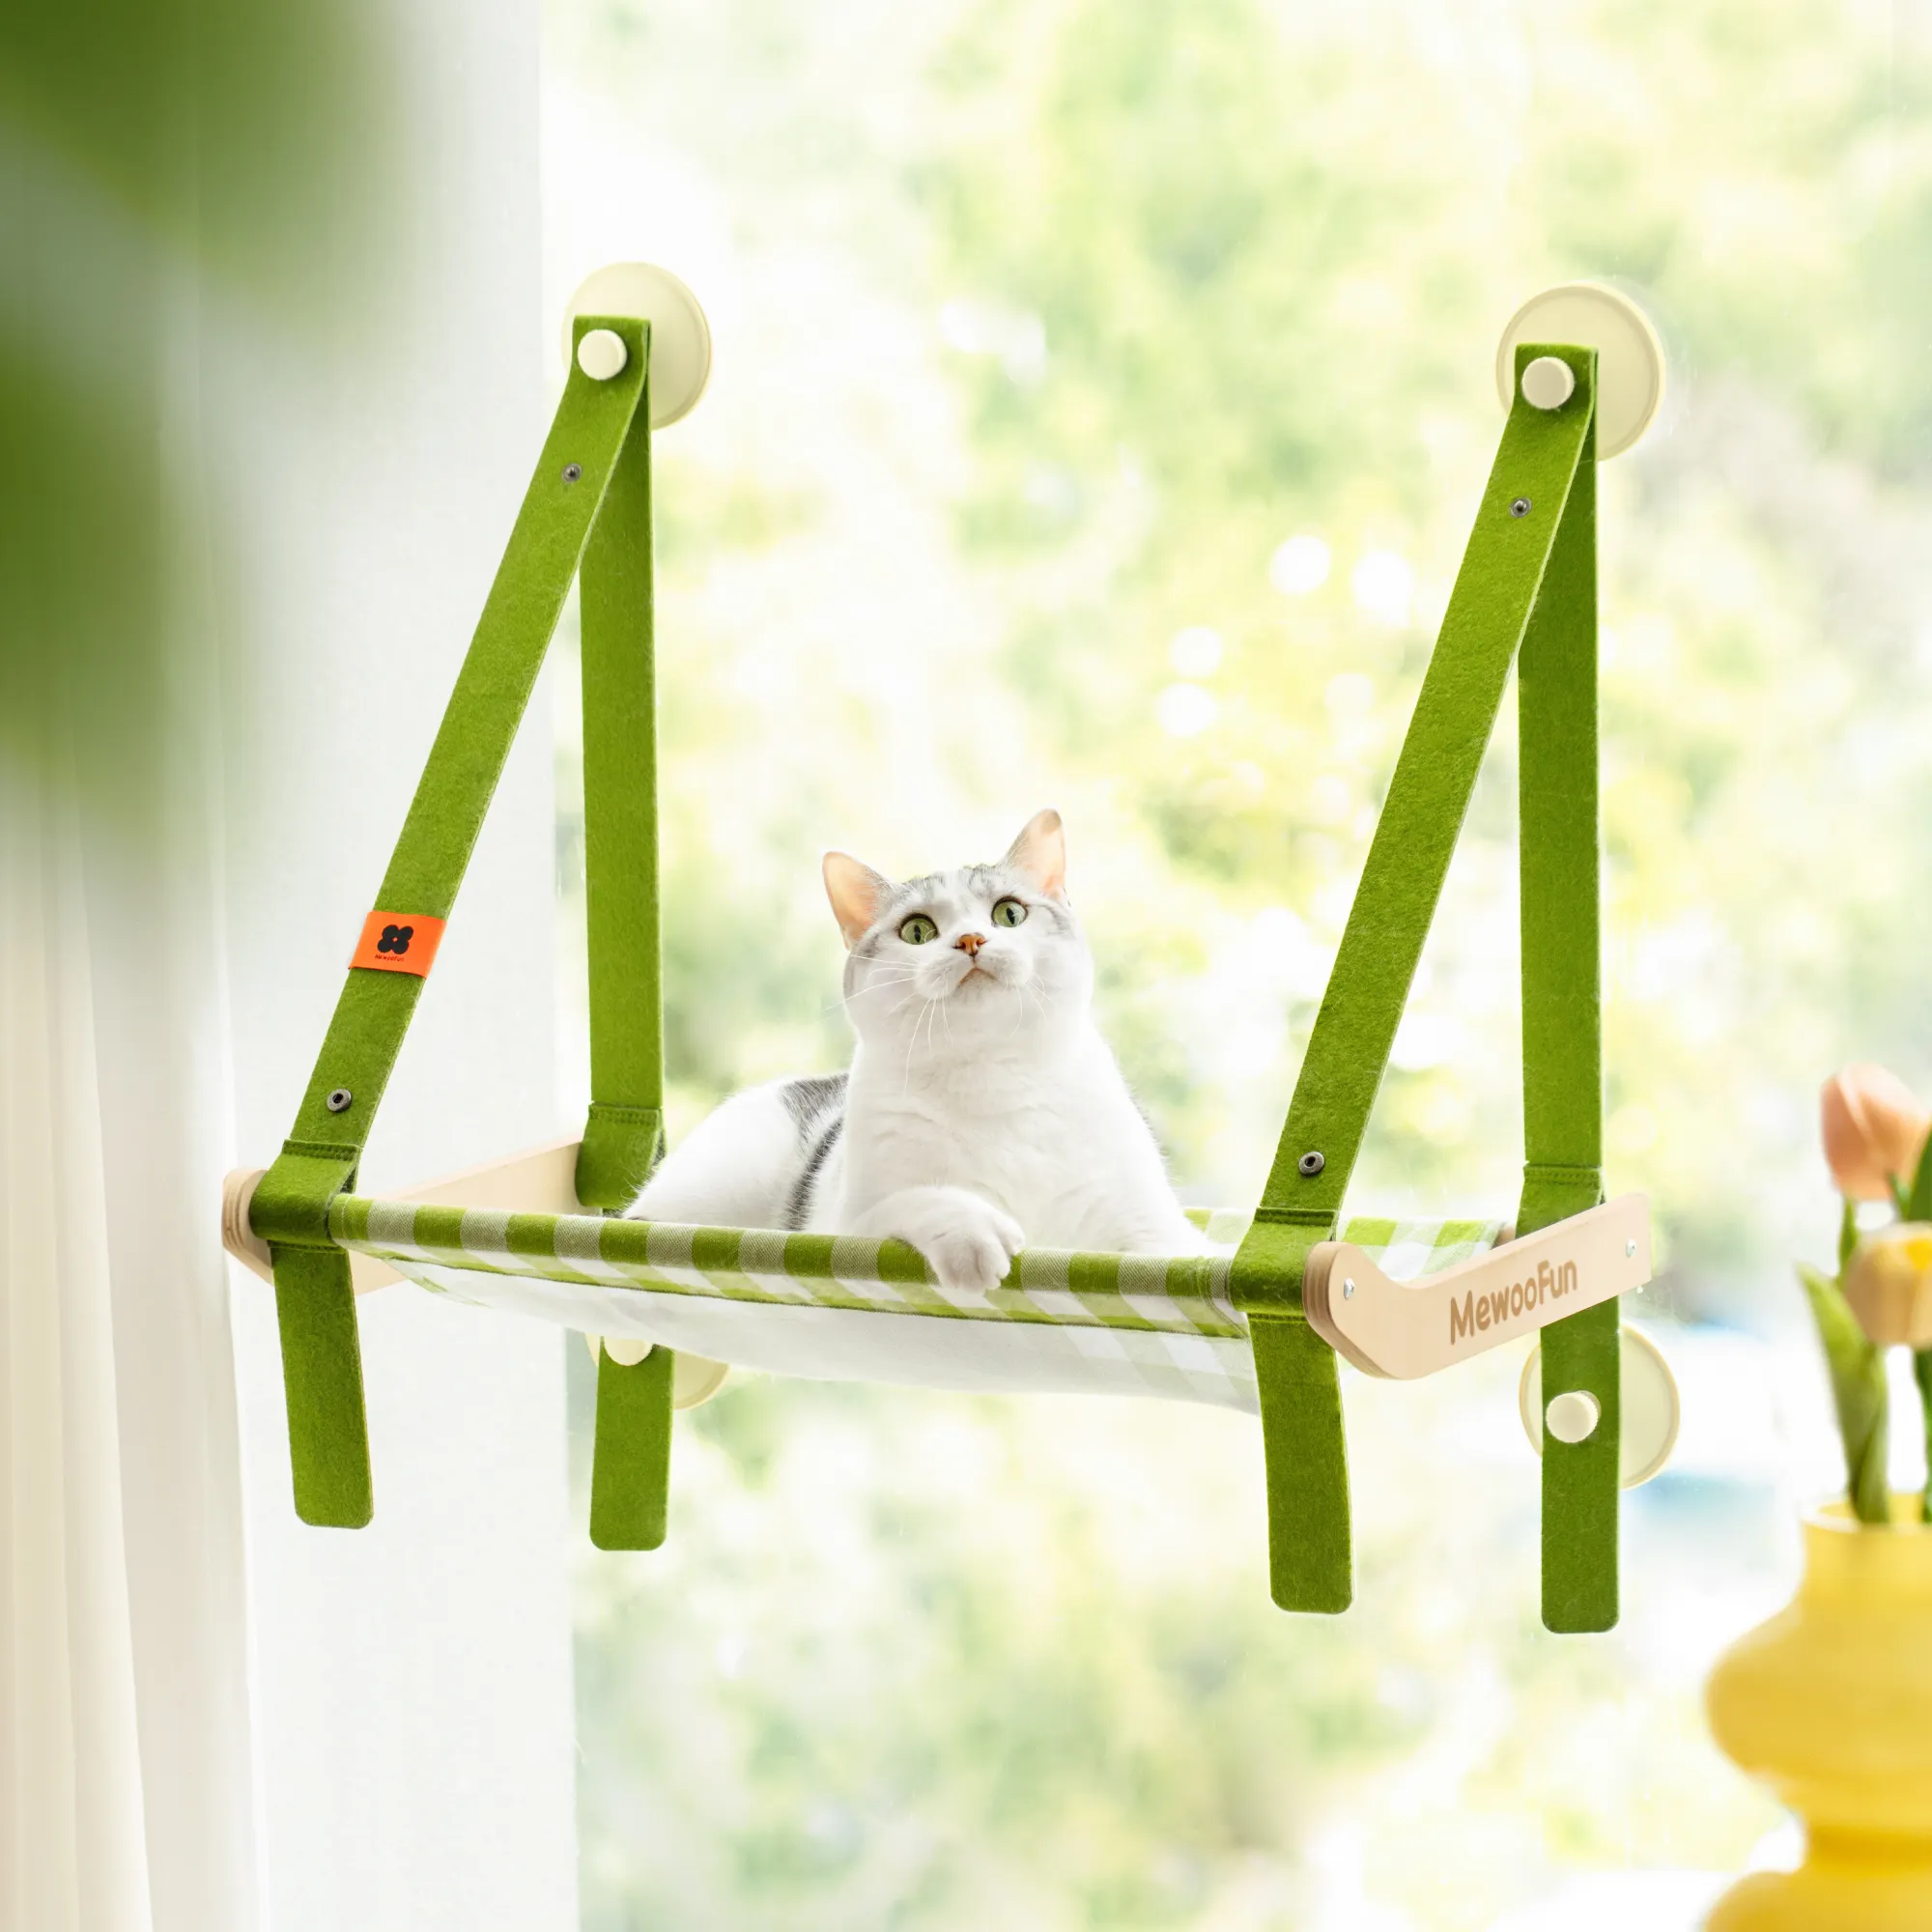 मवूलमज़ेदार थोक बिल्ली खिड़की पेर्च के साथ खम्मक बिस्तर सीट को बचाने वाली दीवार माउंट पालतू जानवर बिल्ली